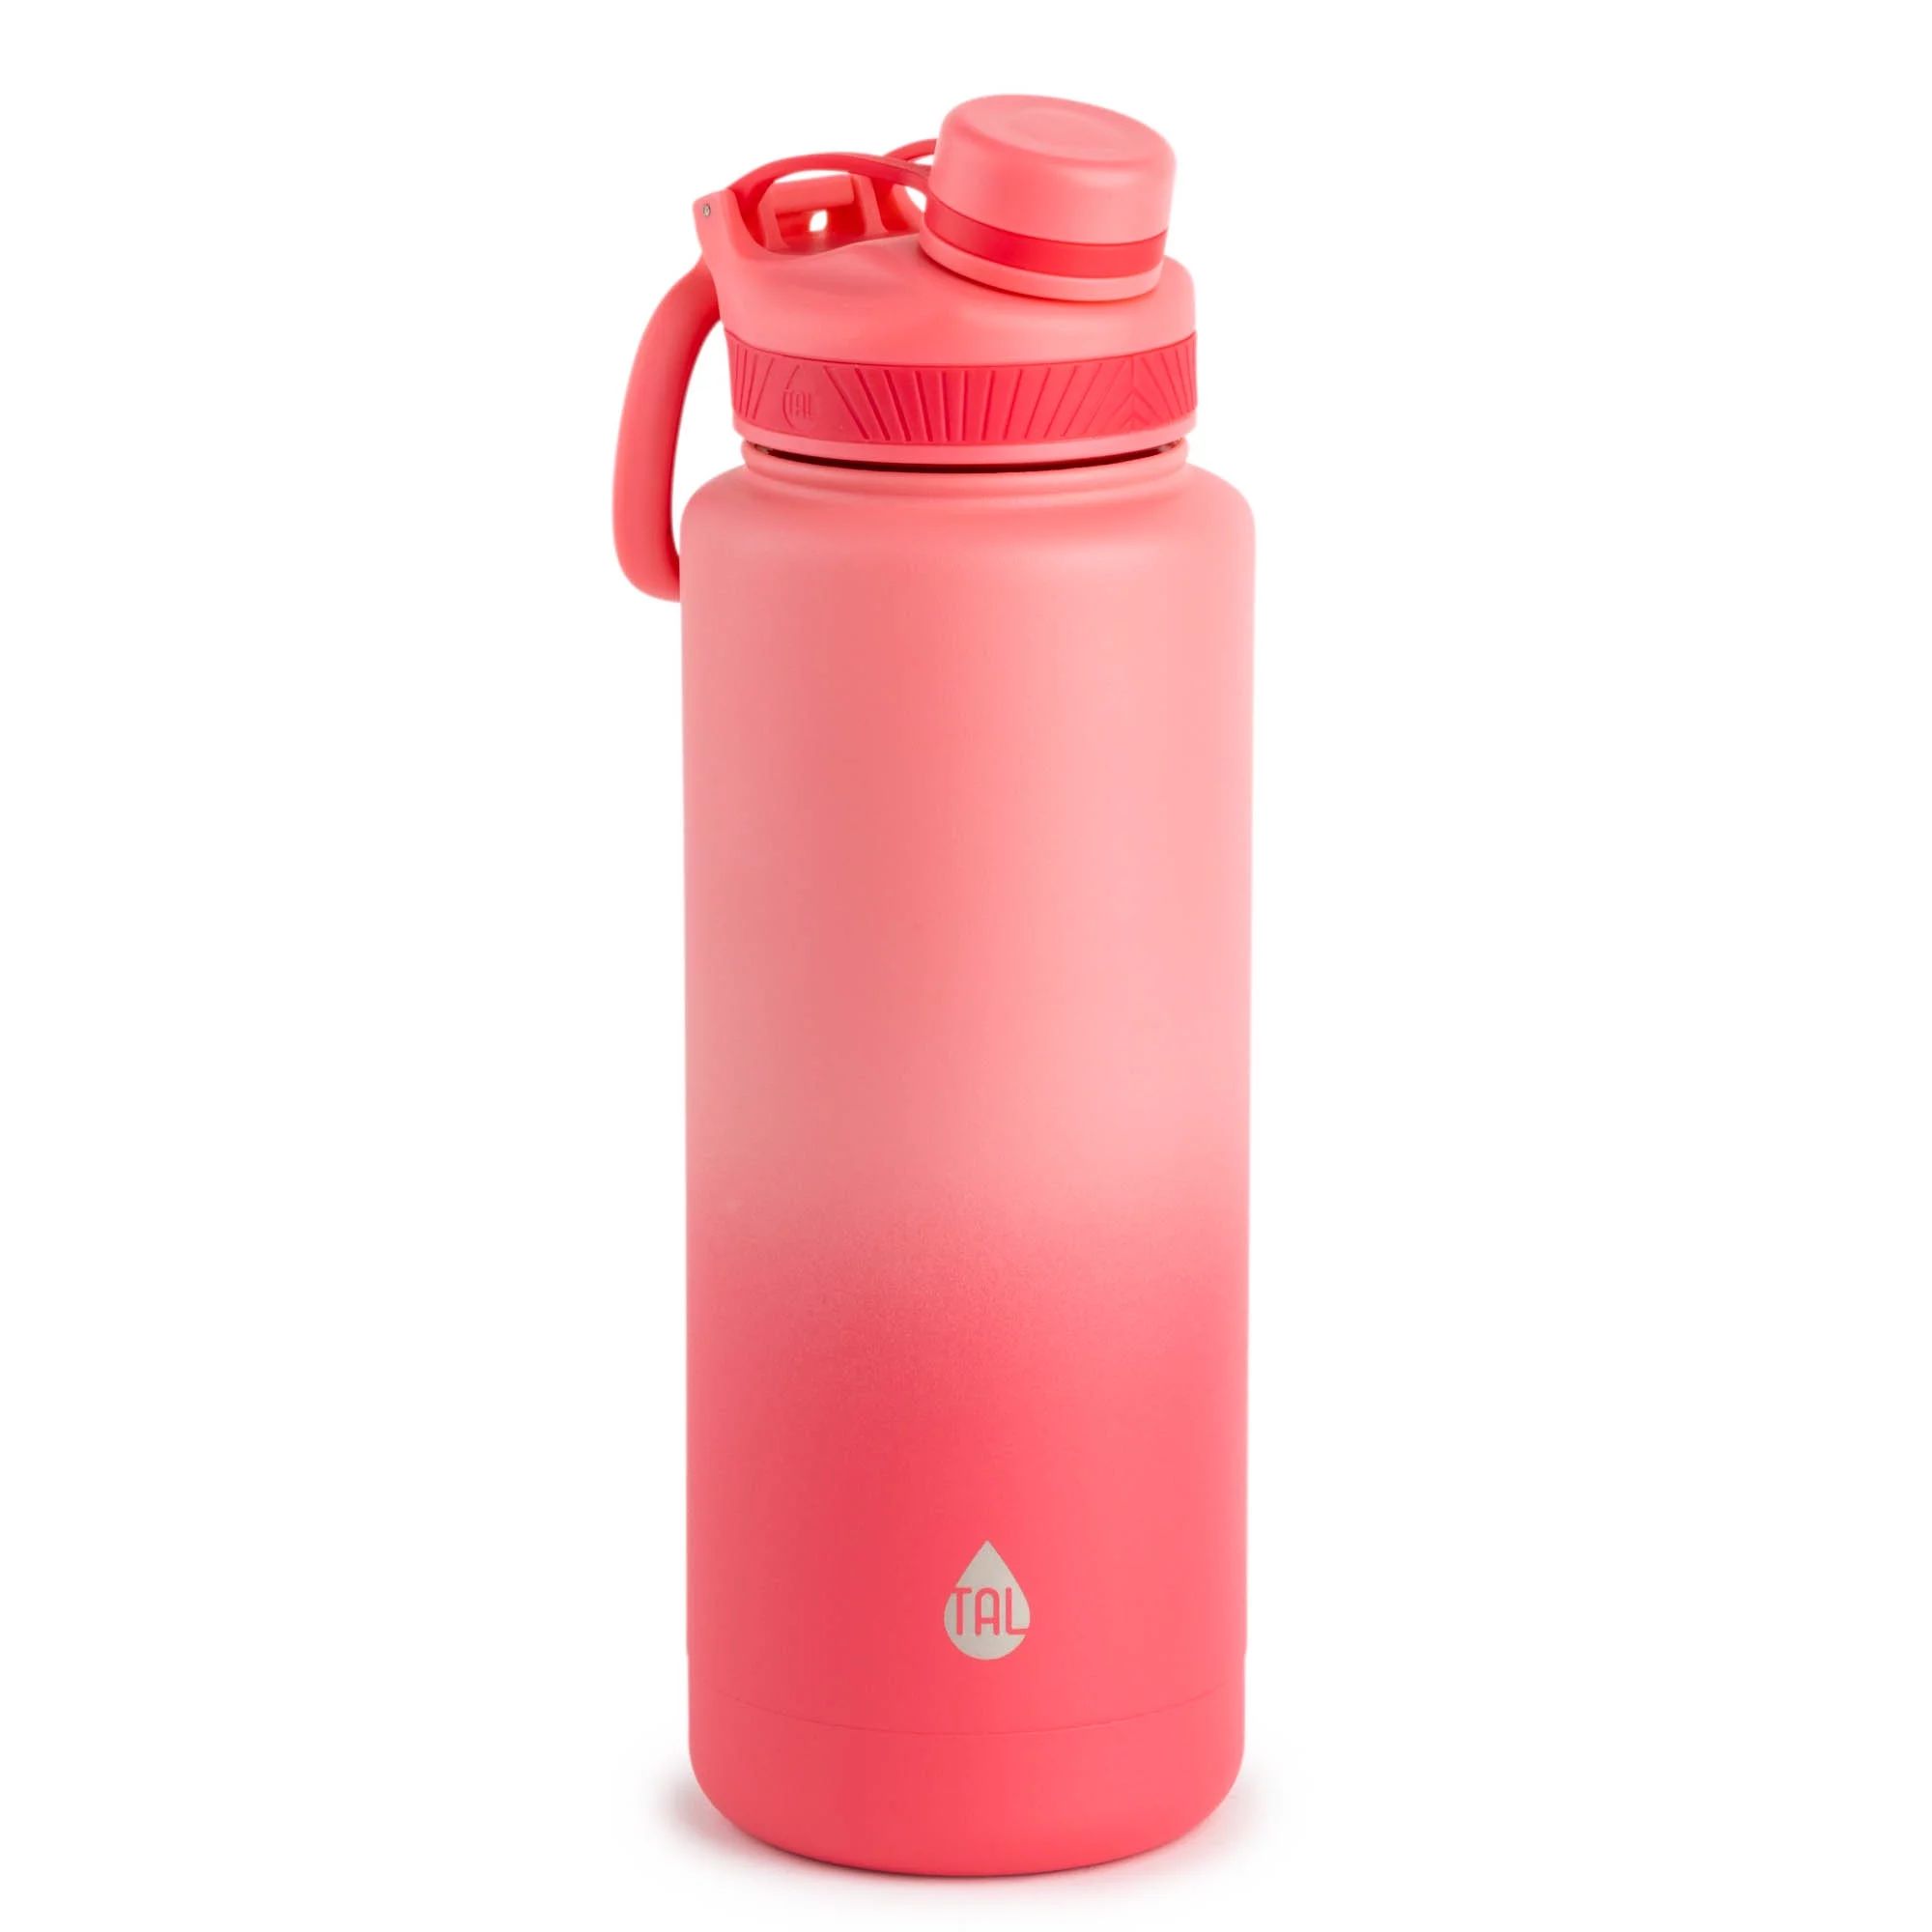 TAL Stainless Steel Ranger Water Bottle 40 fl oz, Ombre Pink | Walmart (US)